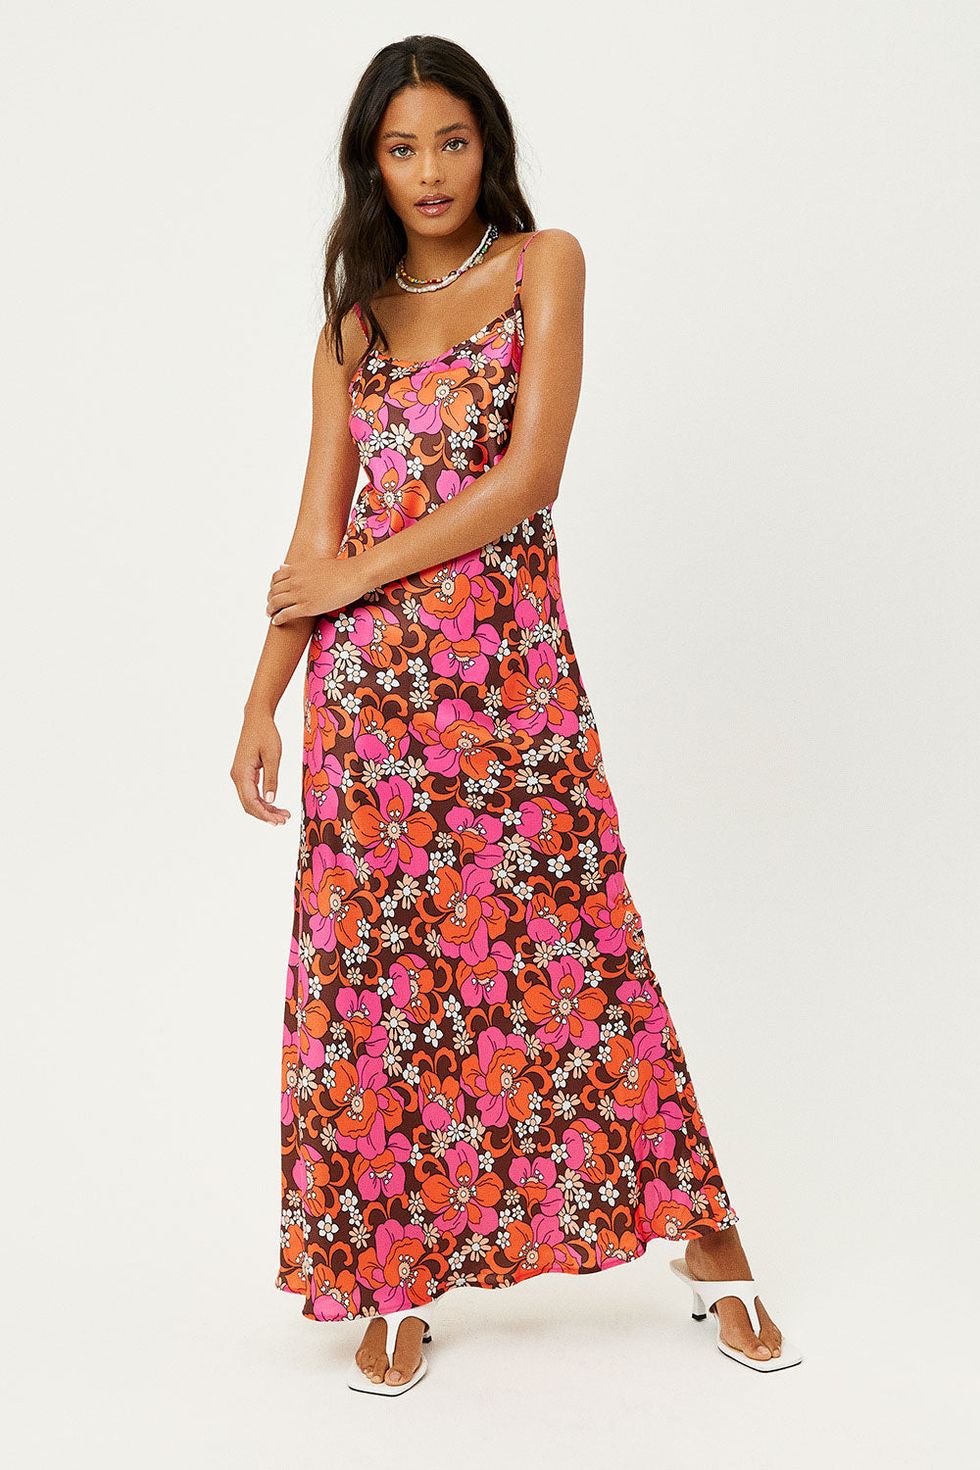 Isabel Satin Floral Dress: Floral dresses